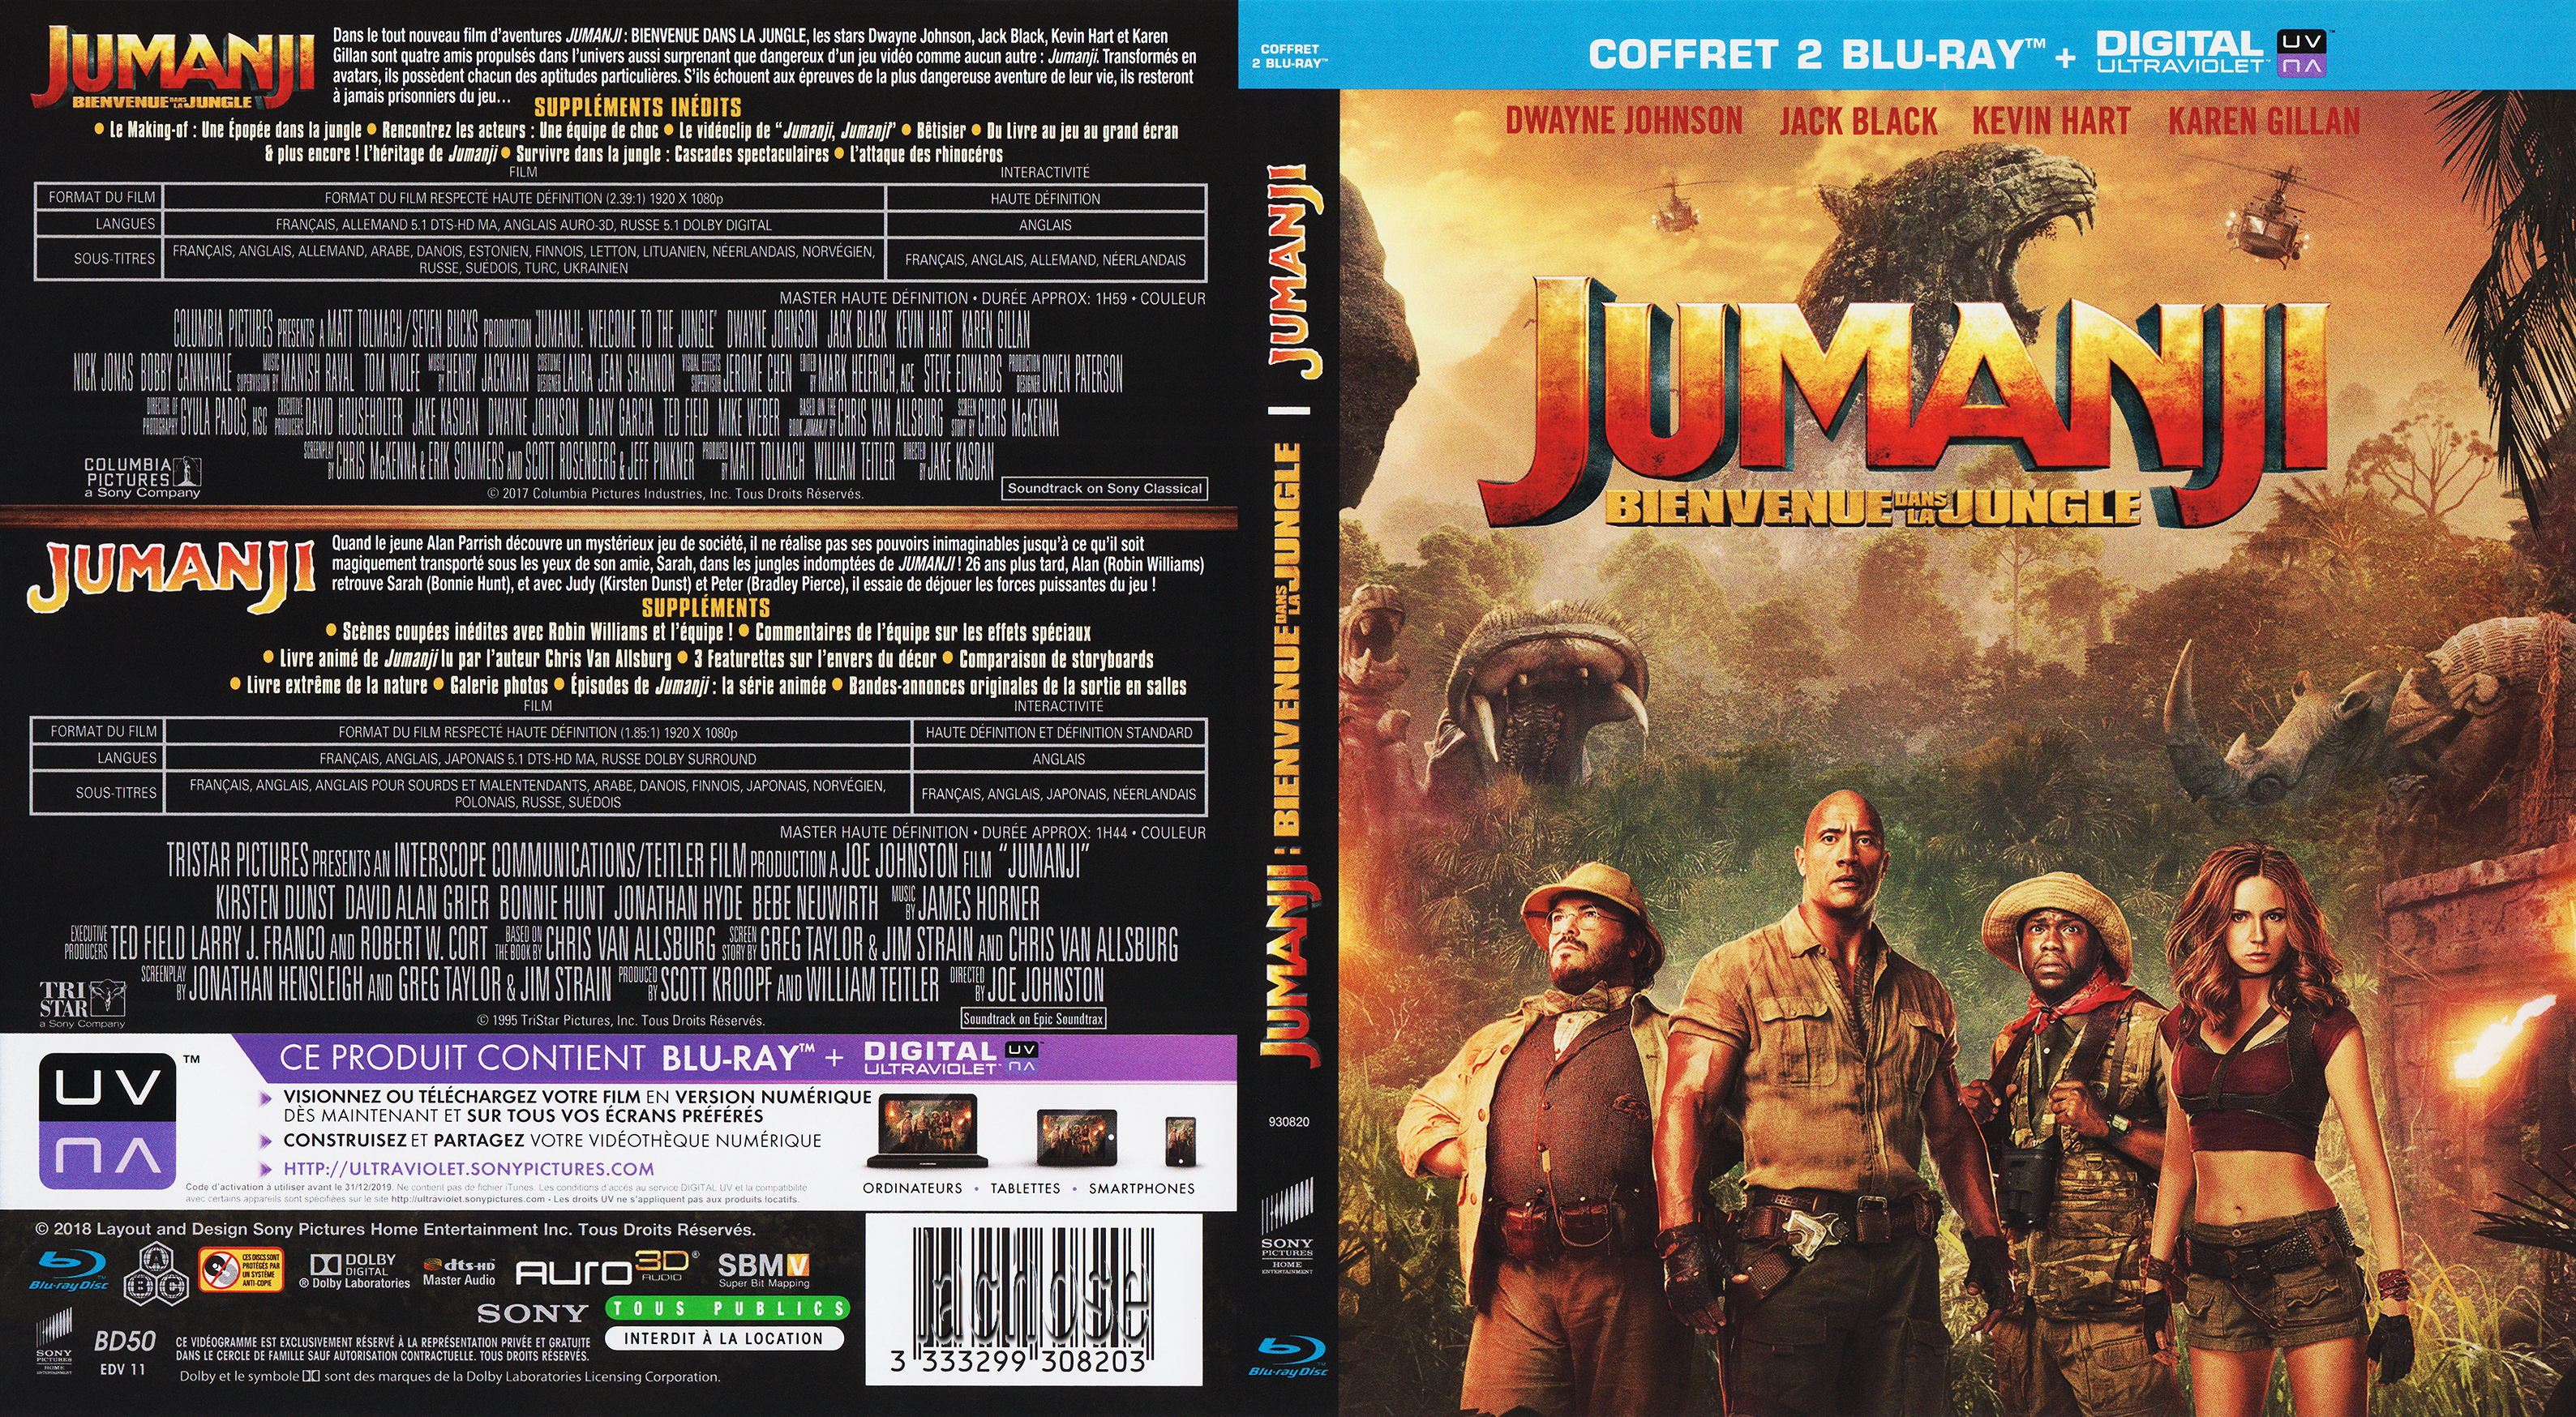 Jaquette DVD Jumanji 1 - 2 (BLU-RAY)